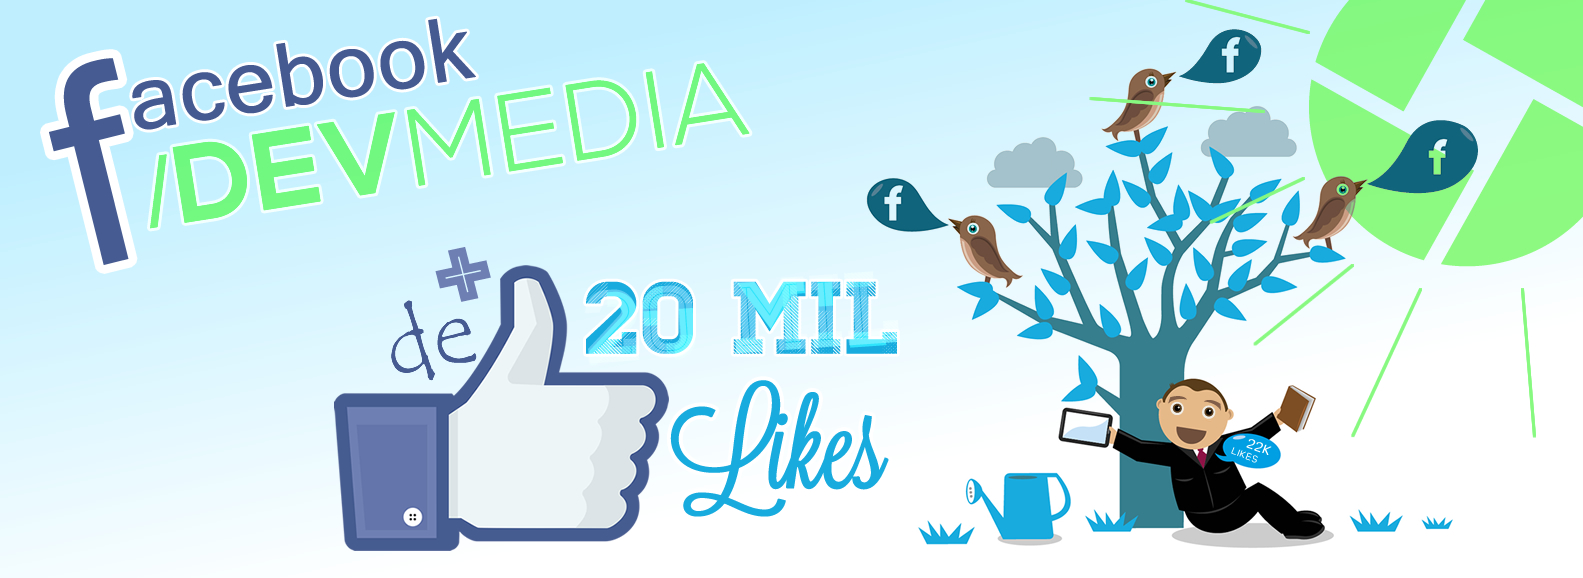 Promoo Facebook DevMedia - Mais de 20 mil curtidas